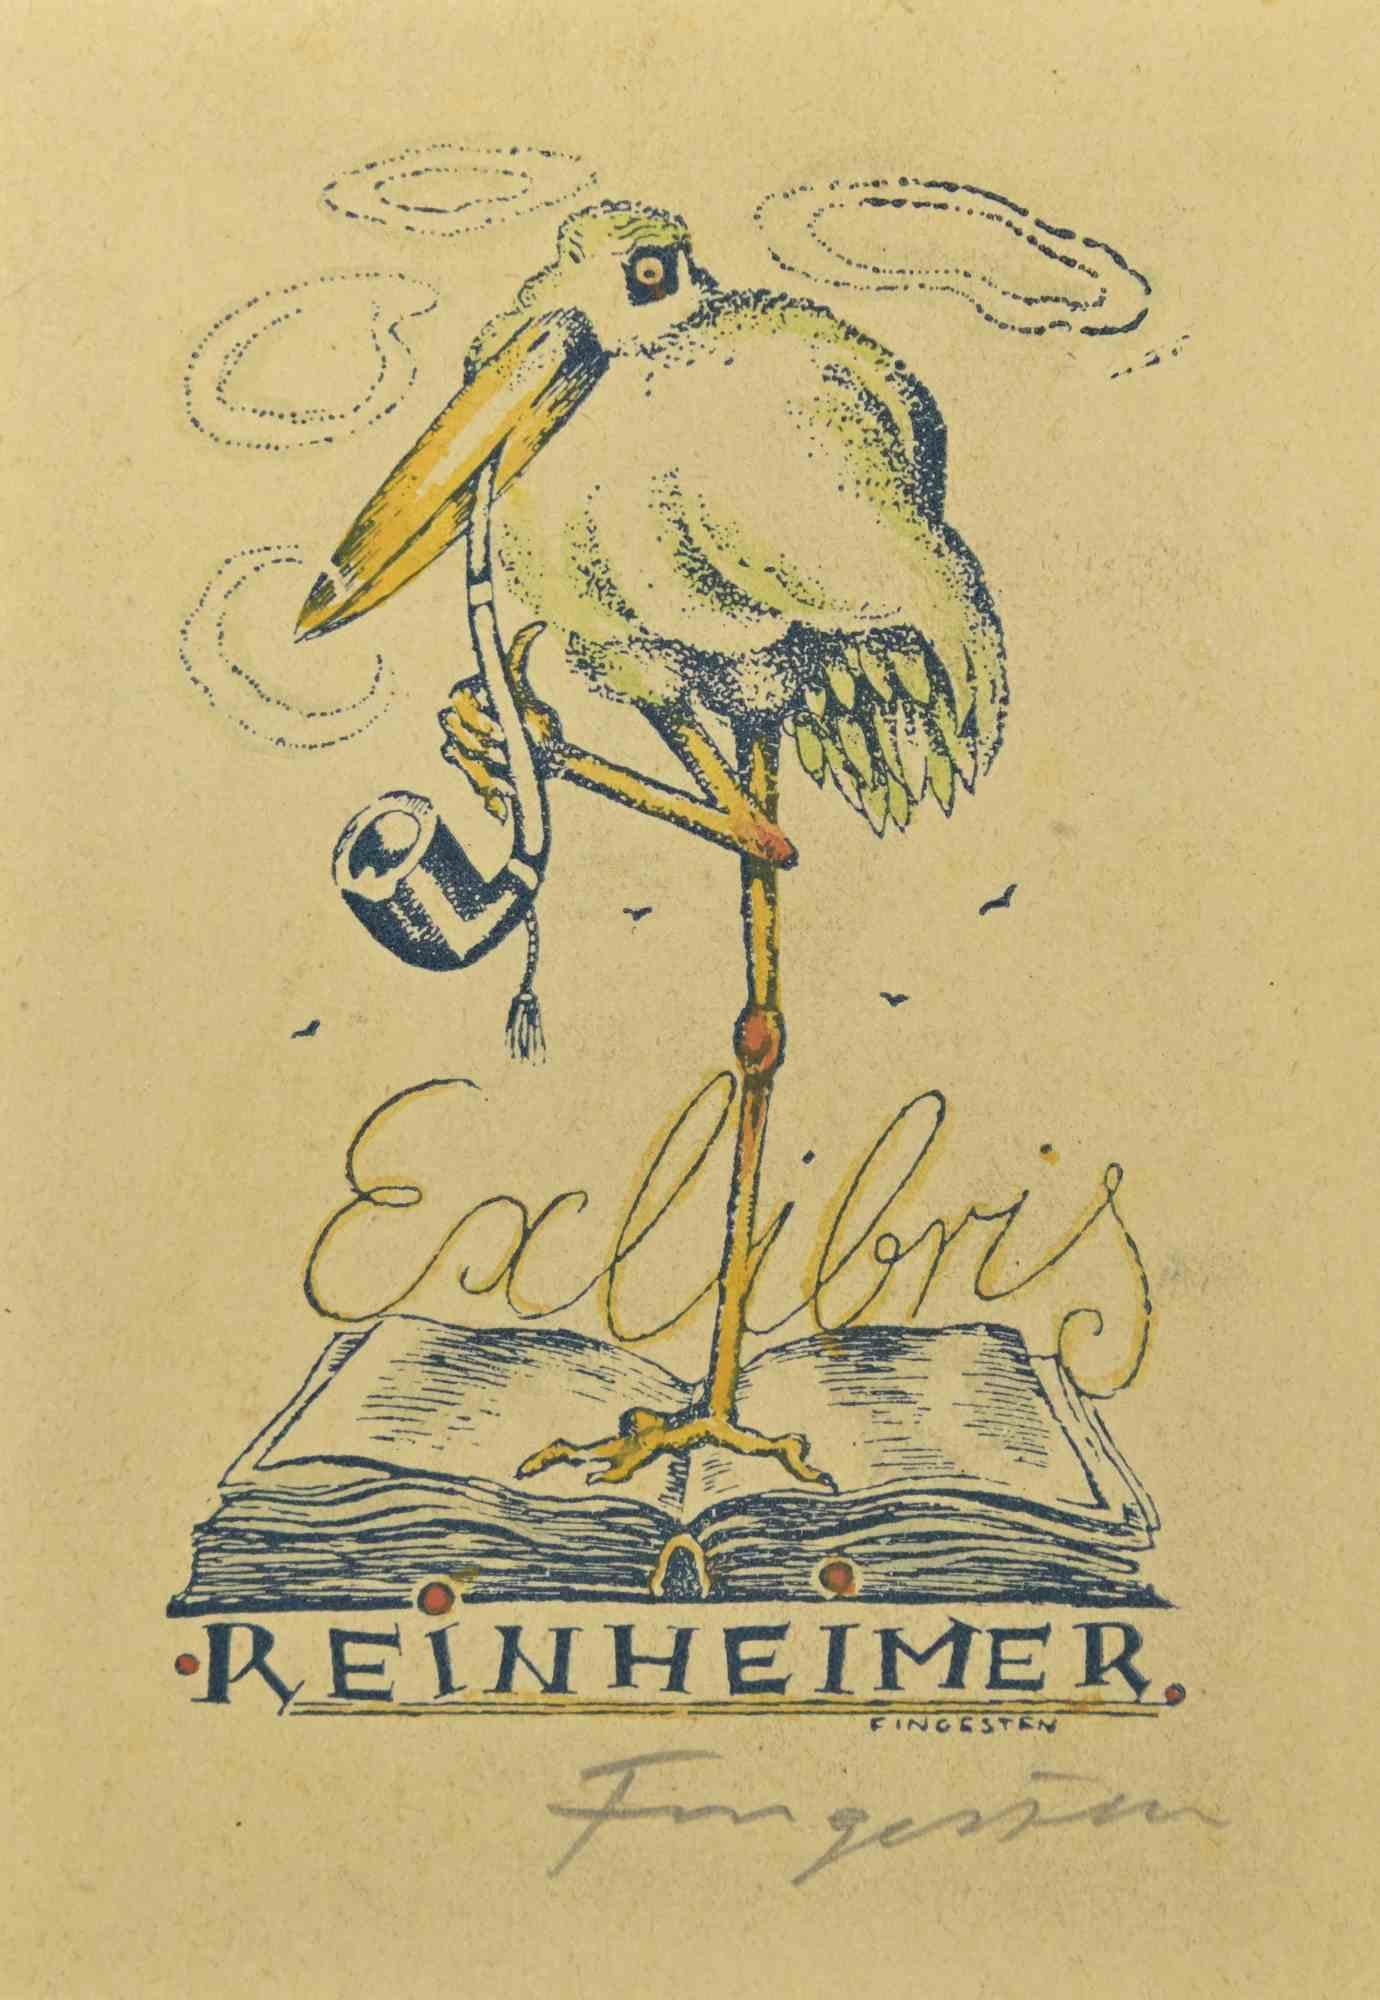 Ex Libris - Reinheimer ist ein farbiger Holzschnitt, der von  Michel Fingesten.

Handsigniert am   der untere rechte Rand.

Gute Bedingungen.

Michel Fingesten (1884 - 1943) war ein tschechischer Maler und Graveur jüdischer Herkunft. Er gilt als